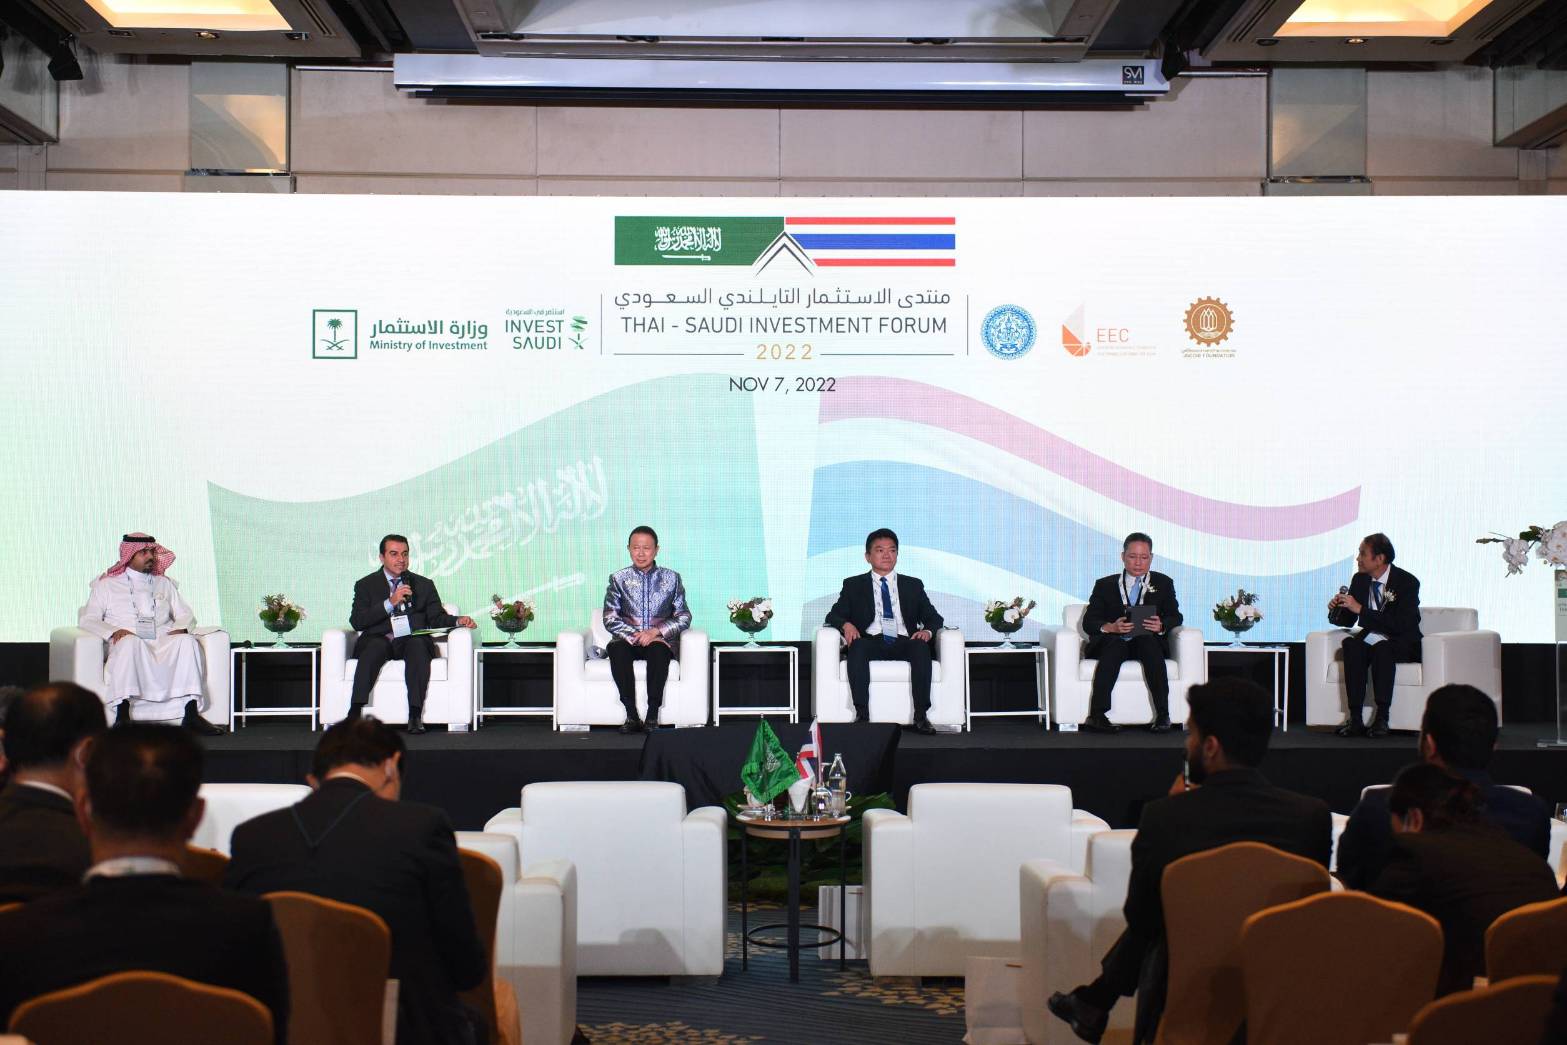 ไทย- ซาอุ กระชับความสัมพันธ์ การประชุม “Thai – Saudi Investment Forum” ยกระดับความร่วมมือ 7 ด้าน 